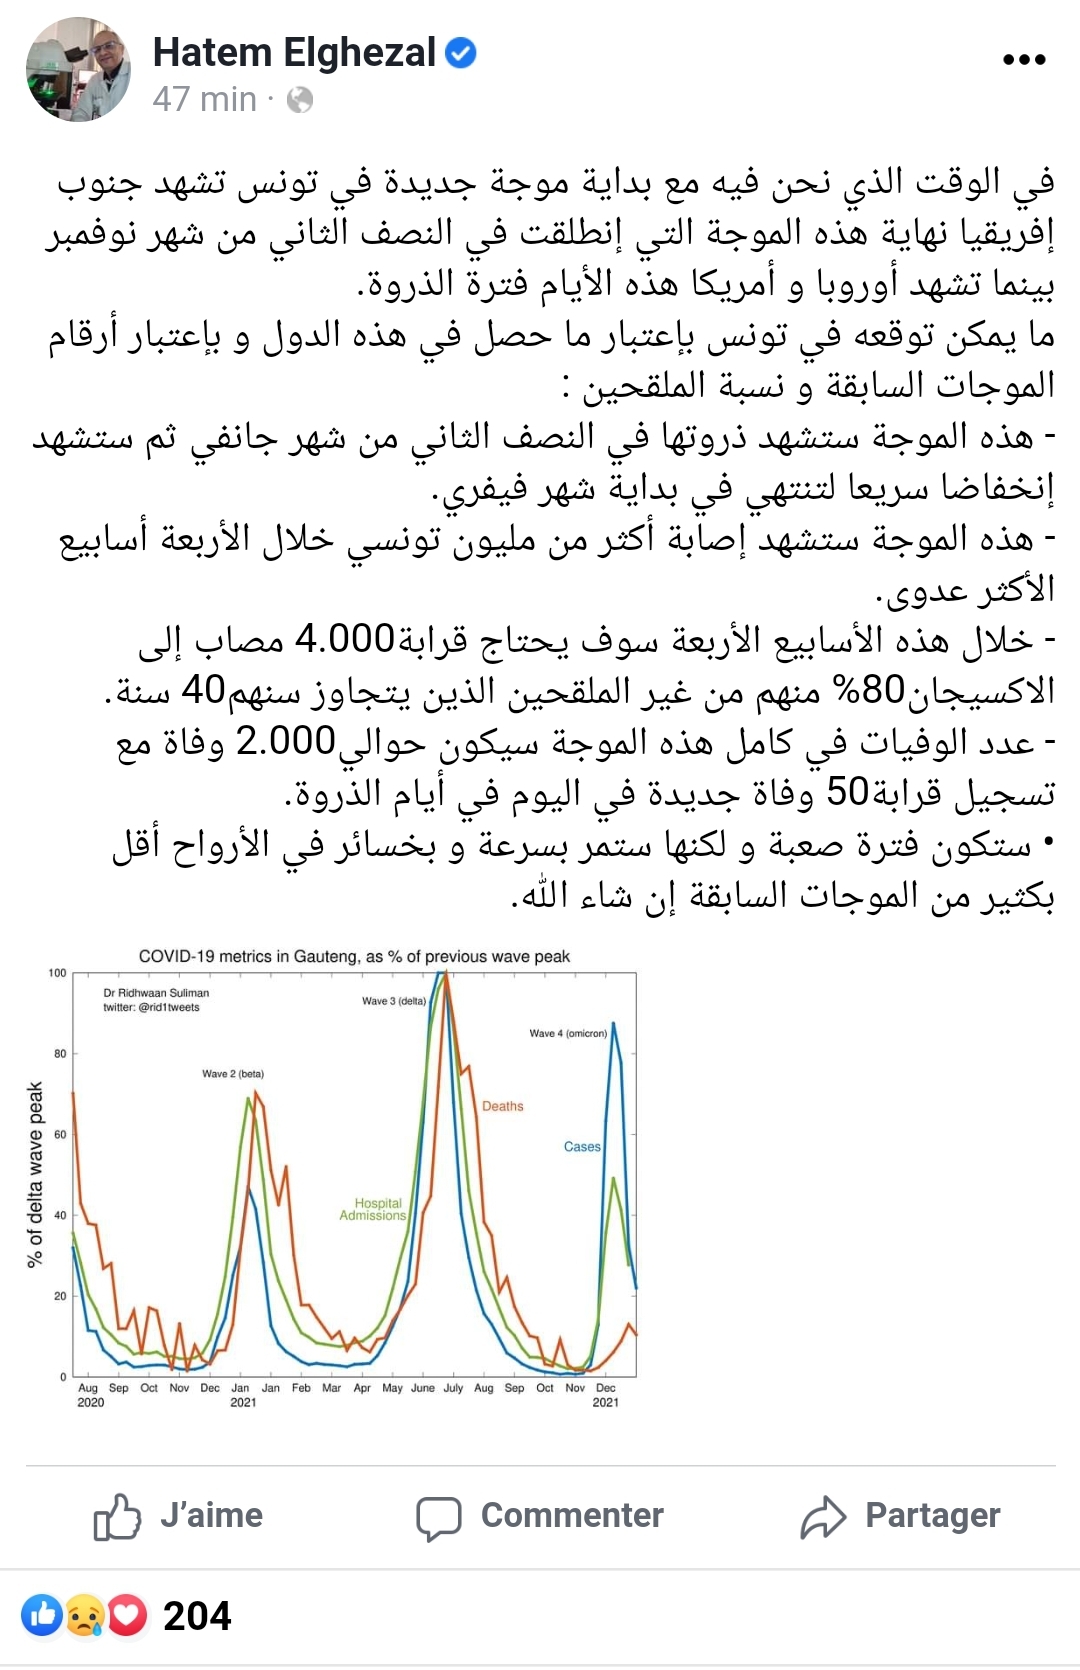 Screenshot 20211230 125511 Facebook - عاجل: الدكتور حاتم الغزال يتوقع موجة جديدة ستؤدي الى اصابة اكثر من مليون تونسي وألفي وفاة